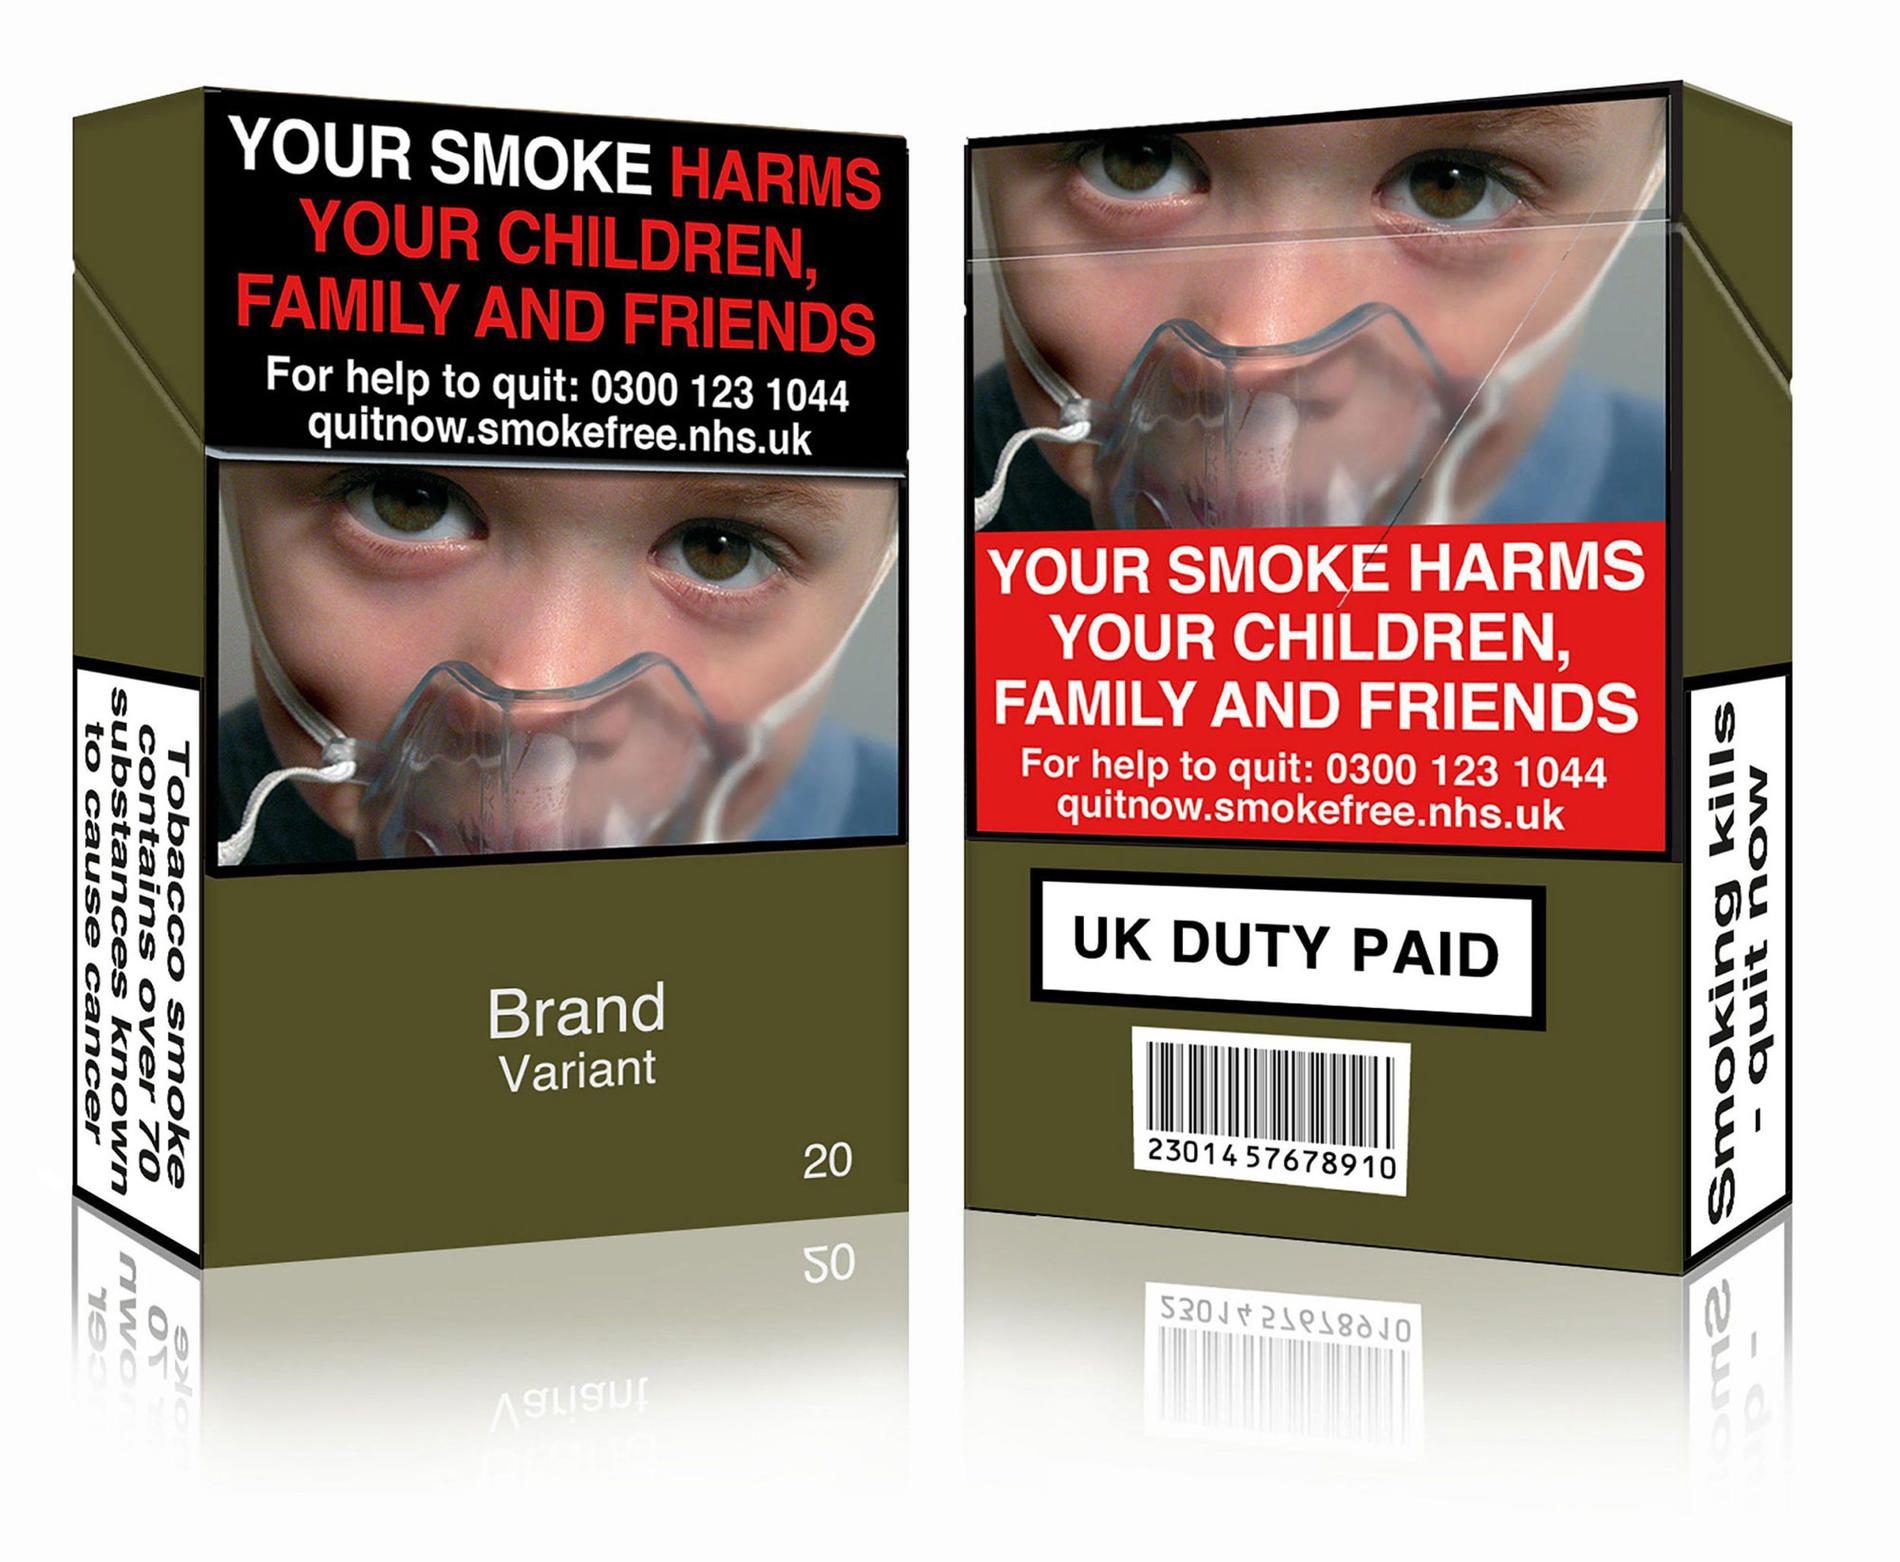 Färgen används på cigarettpaket i Storbritannien tillsammans med obehagliga bilder för att avskräcka från rökning. Fler länder vill ta efter.